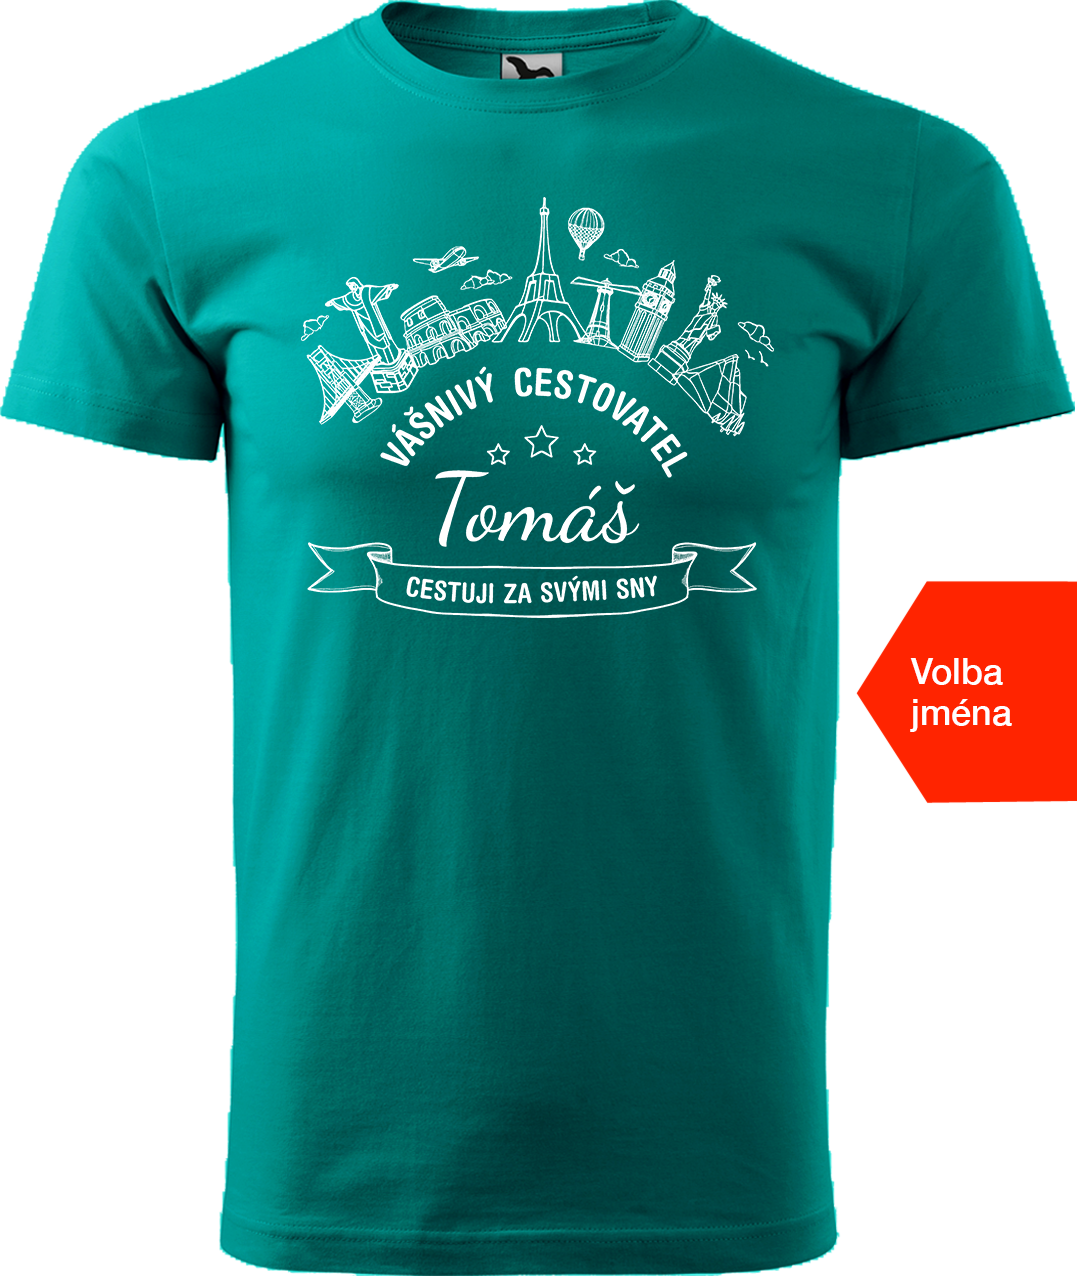 Pánské cestovatelské tričko se jménem - Vášnivý cestovatel Velikost: XL, Barva: Emerald (19)